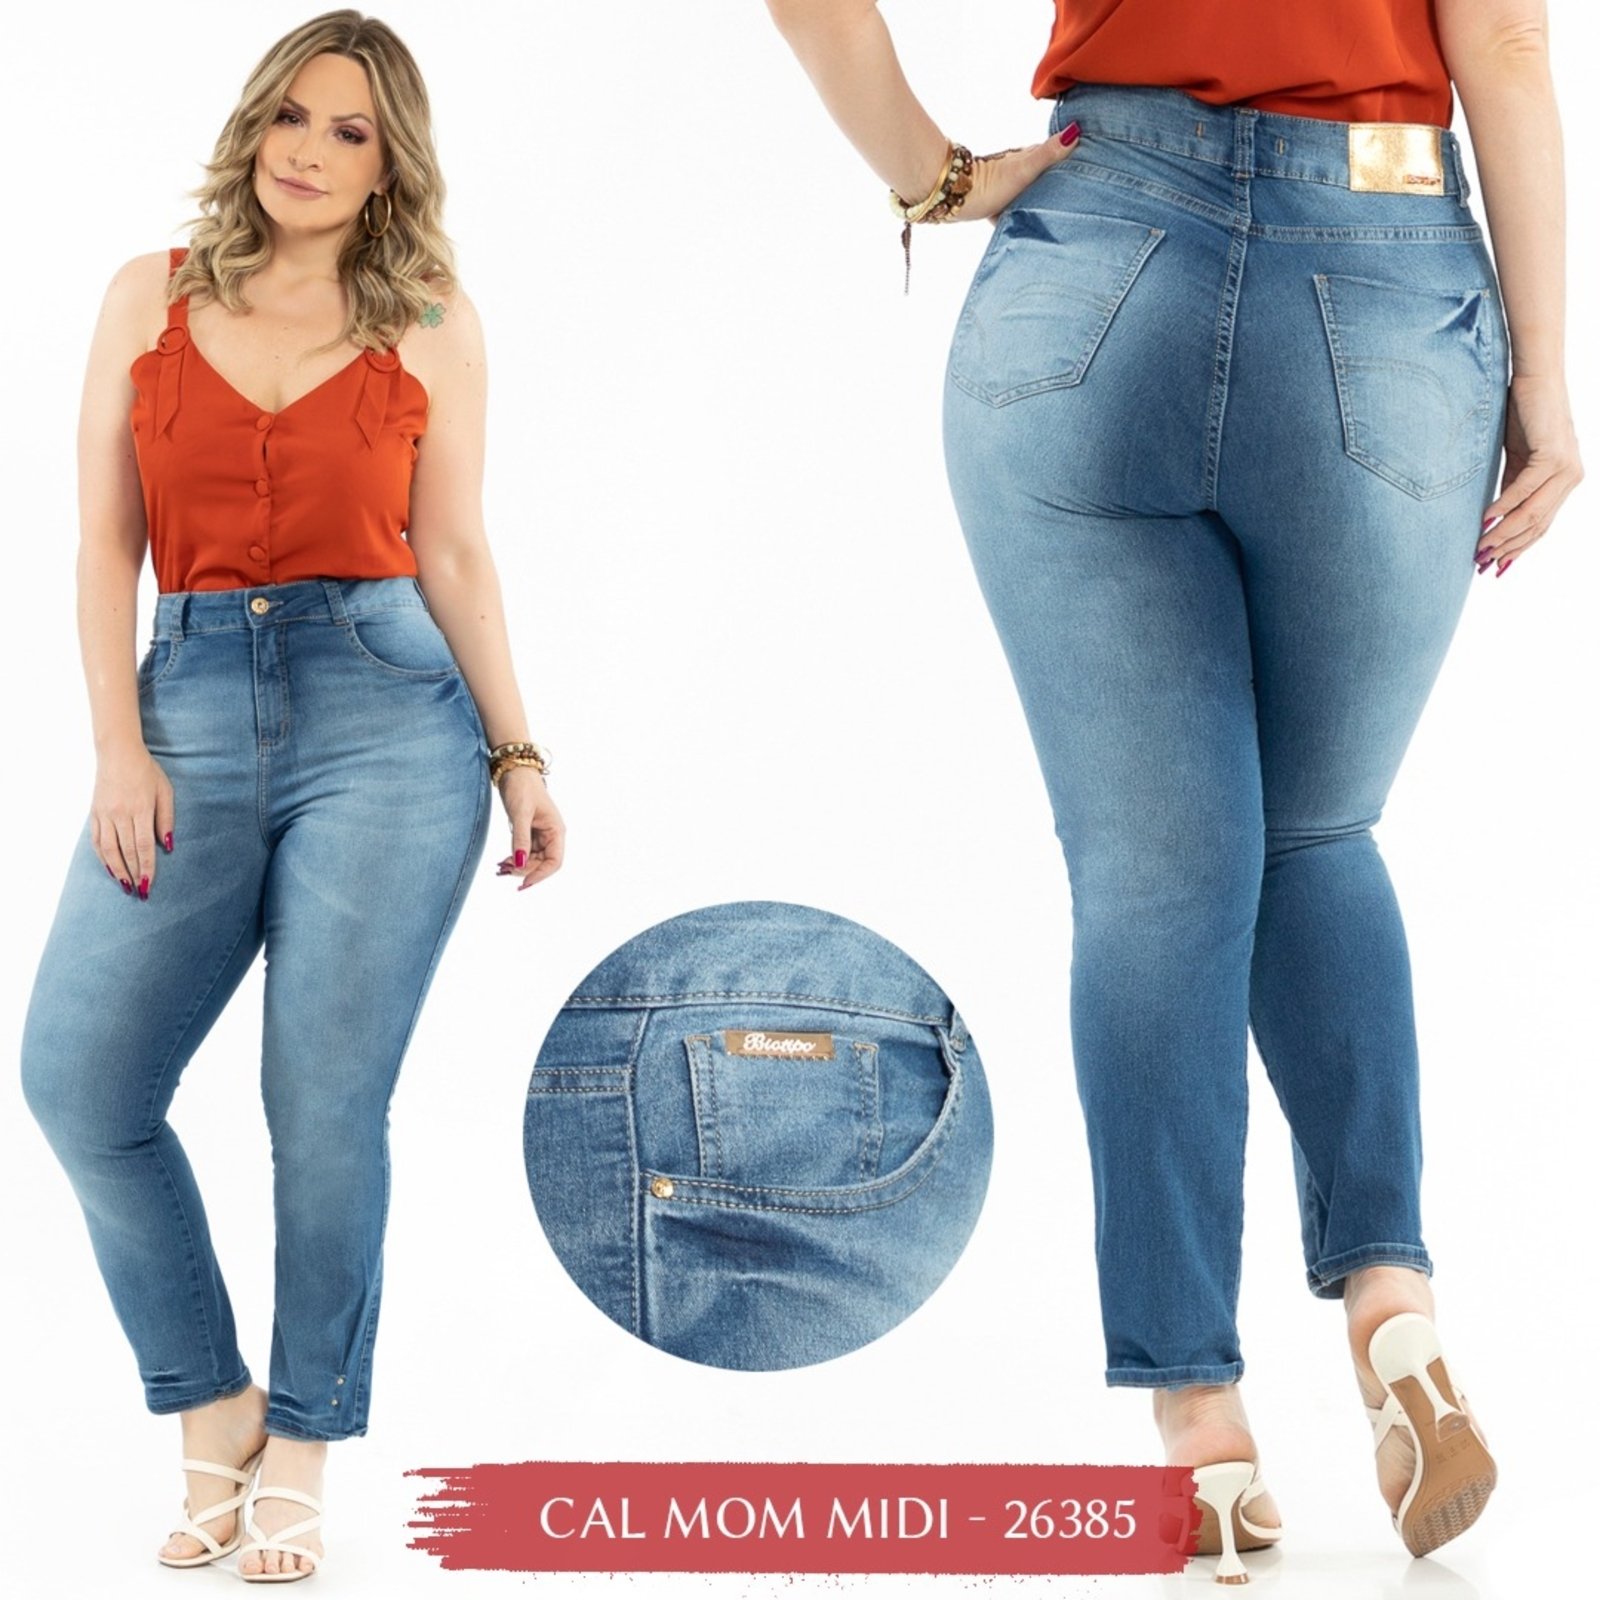 Calça Jeans Feminina Skinny Midi Plus Size - Marshoes